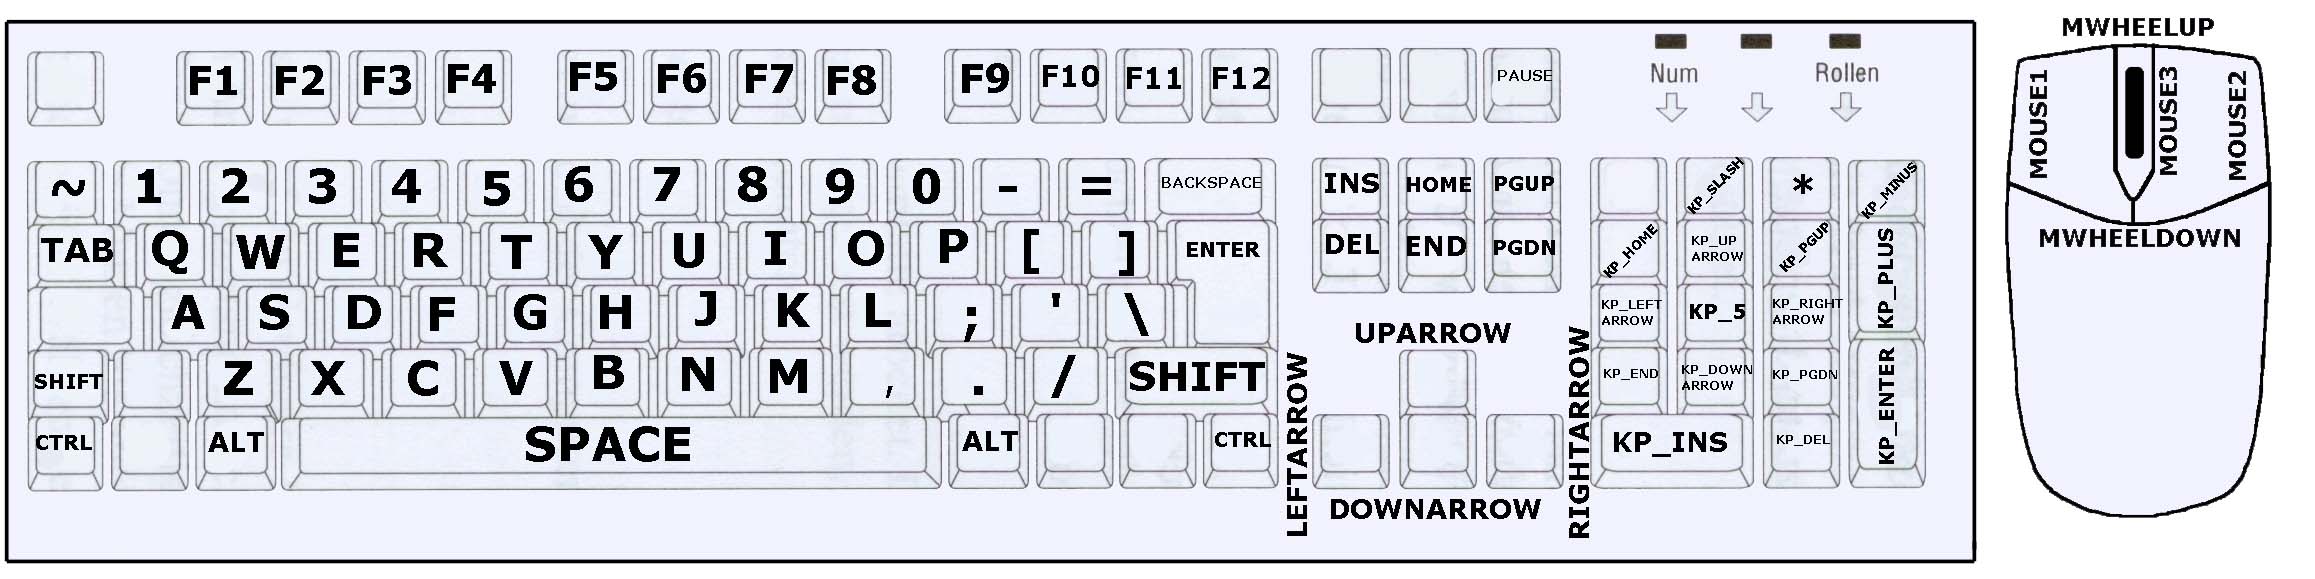 Ctrl backspace. Название кнопокдля бинта. Название кнопок для биндов. Кнопка бинд на клавиатуре. Название клавиш для биндов в КС го.